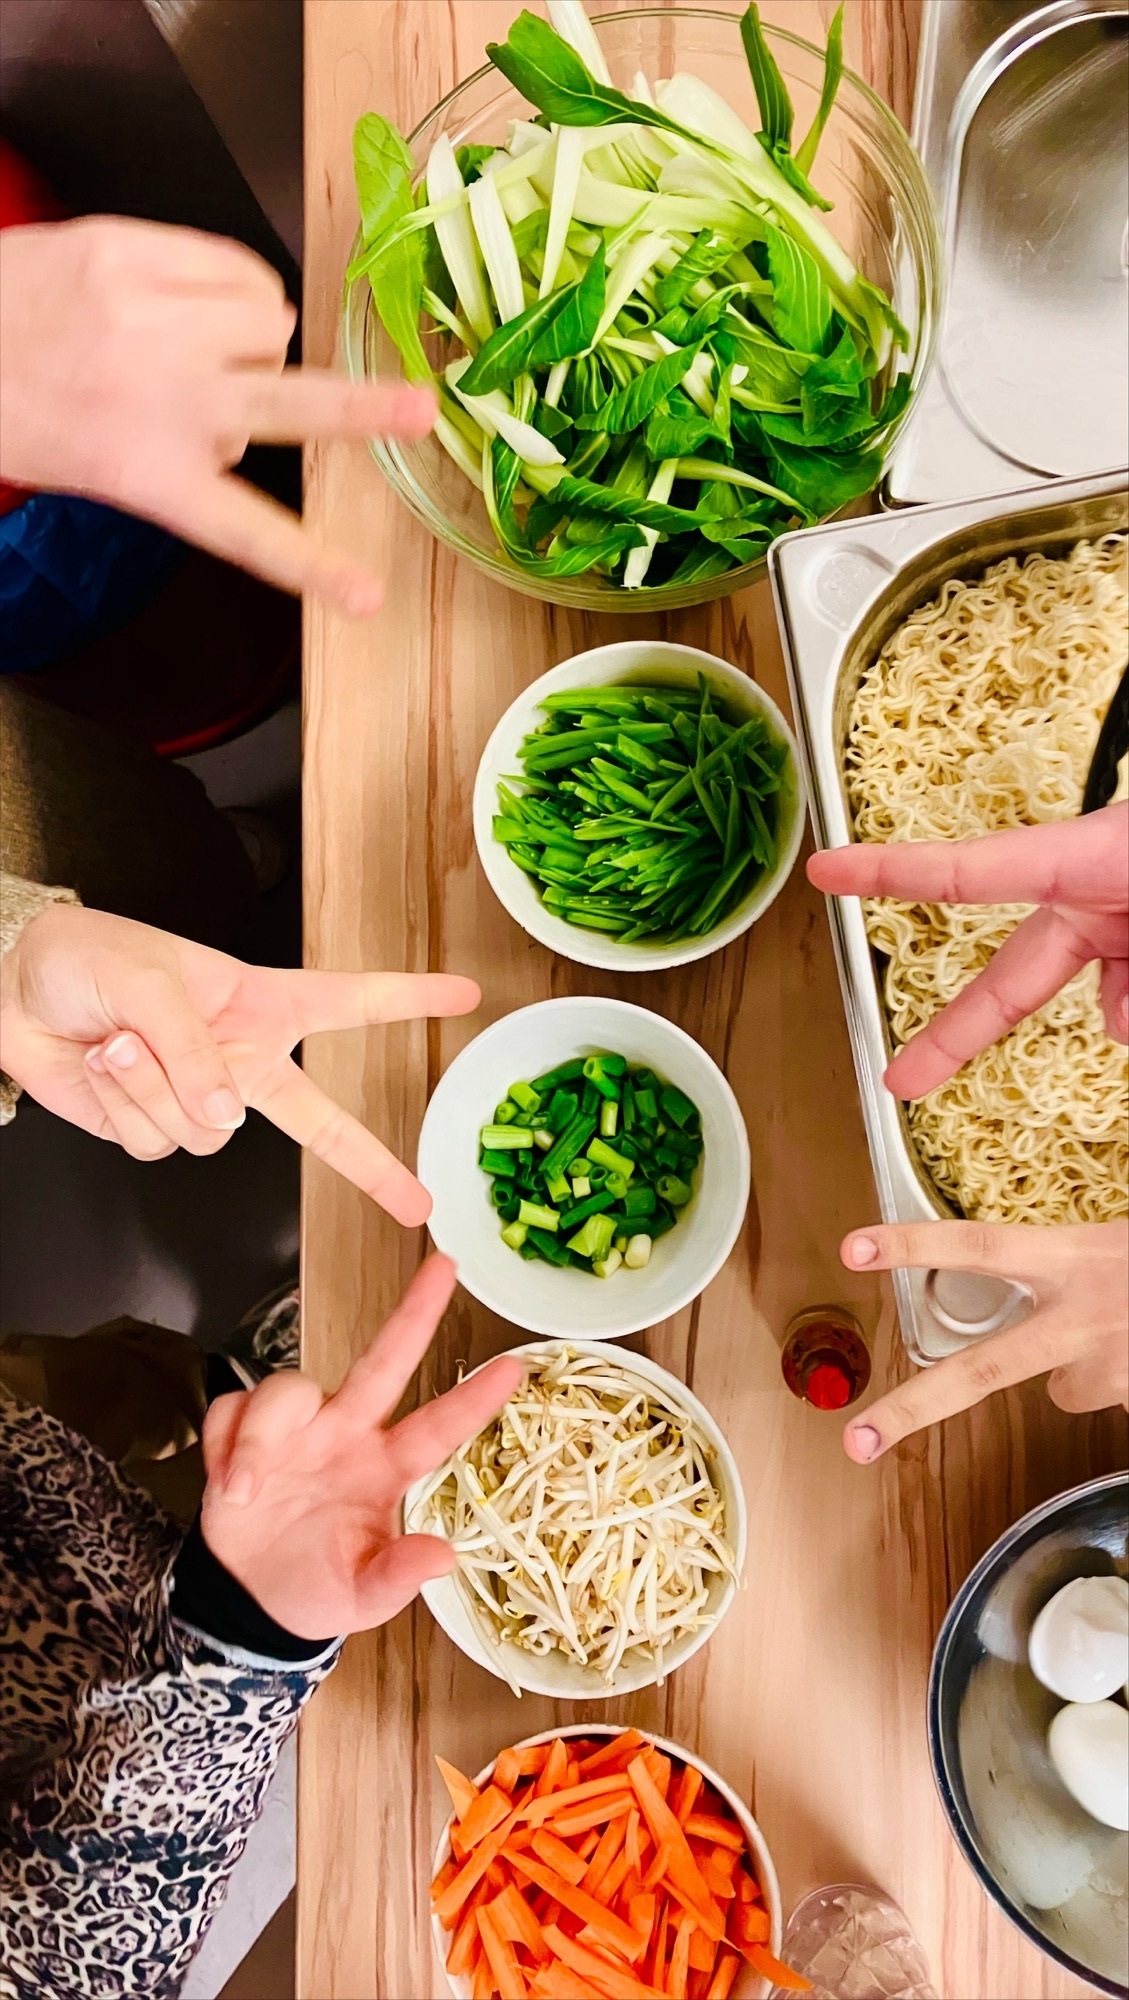 Auf einem Tisch stehen vier runde schalen mit verschiedenem bunten Gemüse. Rechts steht ein großes Gefäß mit Ramennudeln. Der Tisch ist von oben fotografiert. Fünf Hände zeigen das Peace- Zeichen in die Kamera.